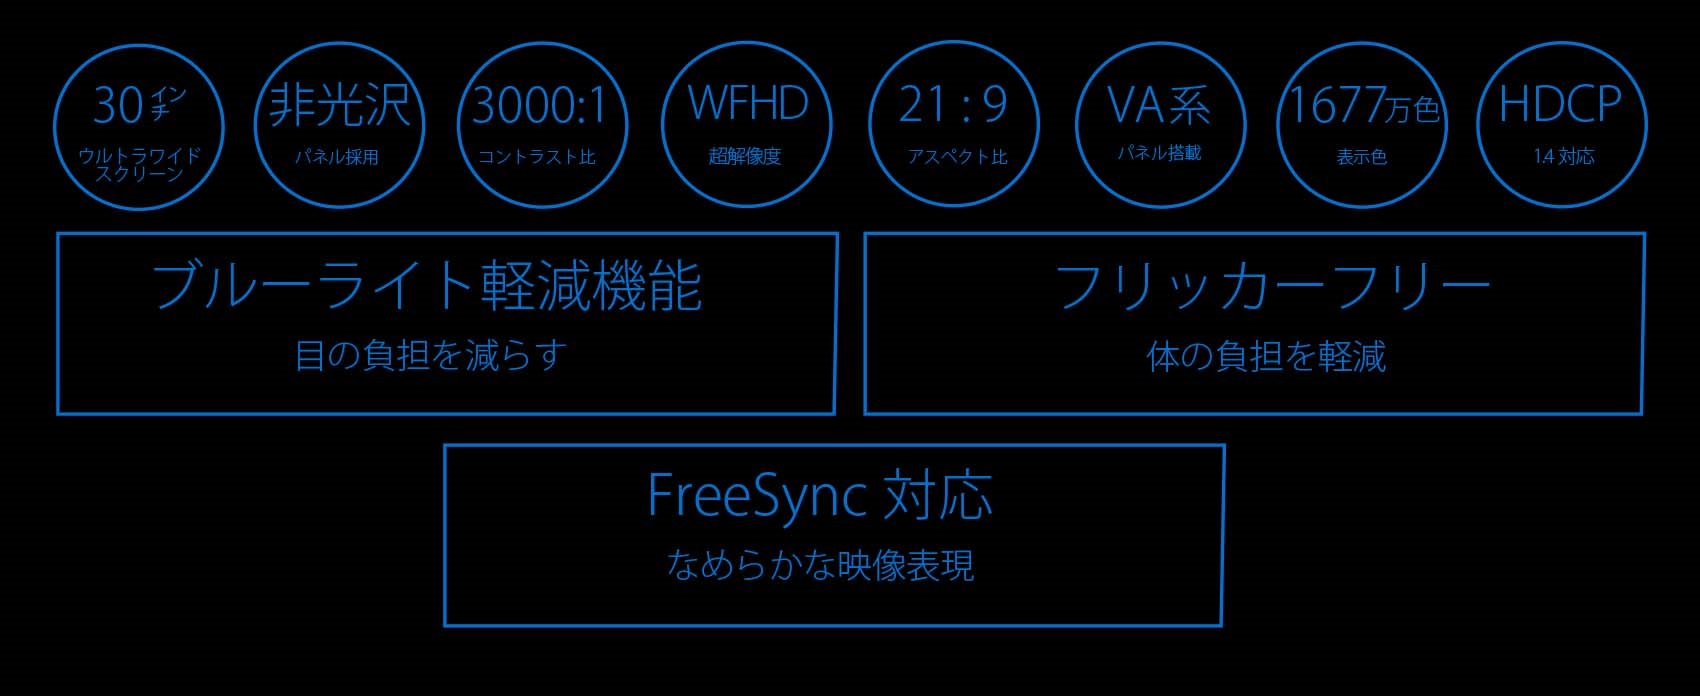 JAPANNEXT 30インチ ワイドFHD(2560 x 1080) 液晶モニター JN 